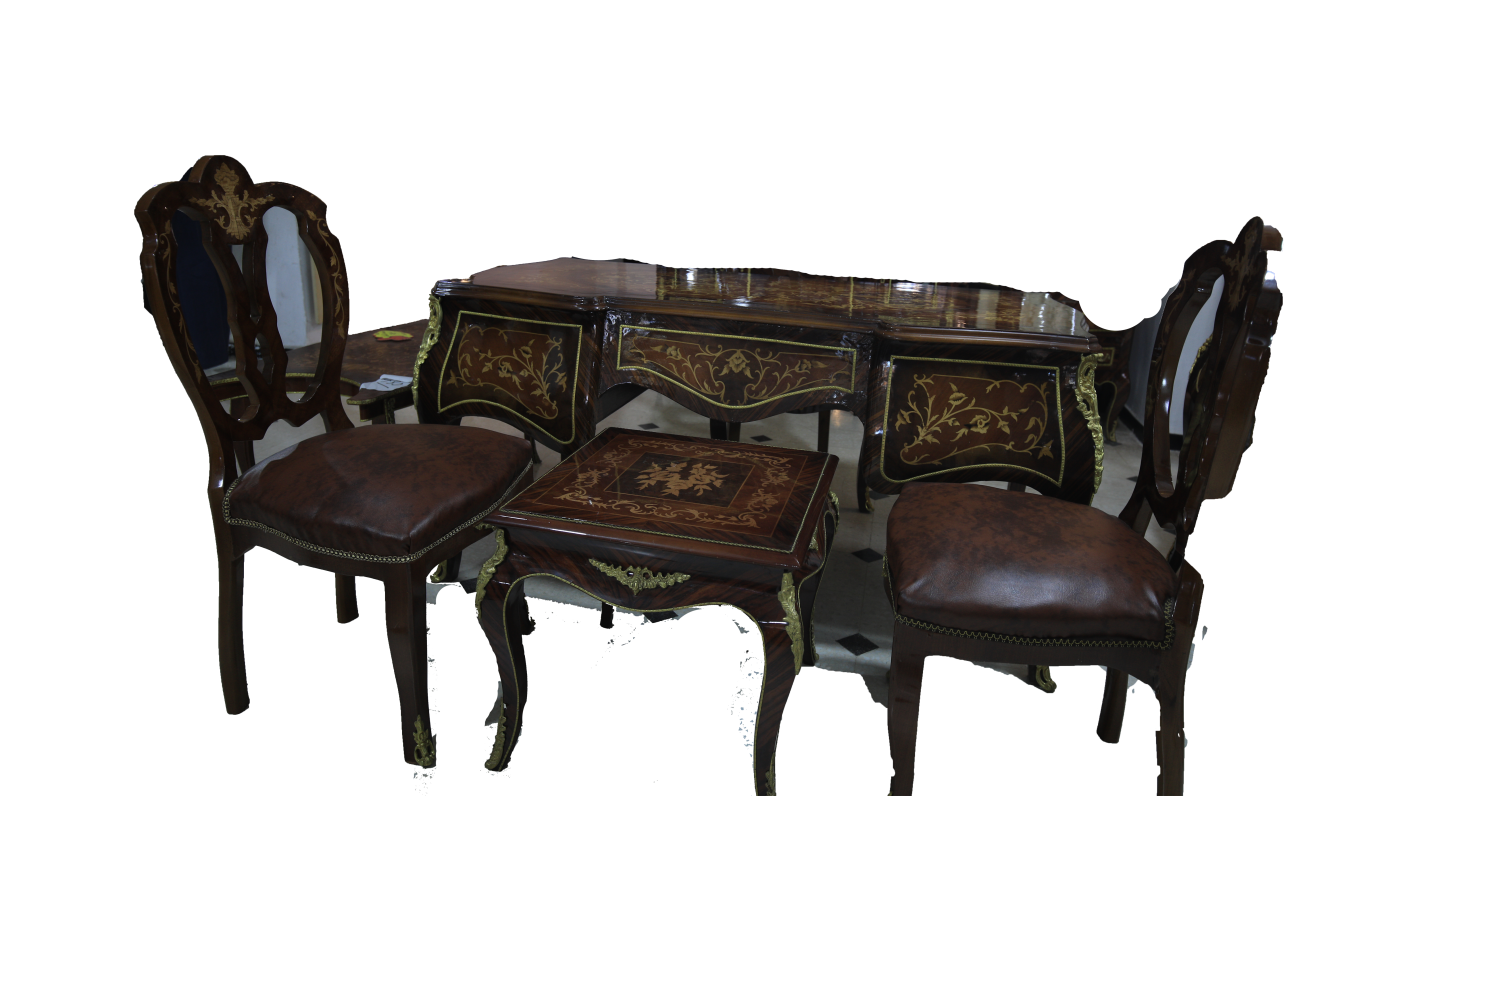 Bureau table et chaises antique